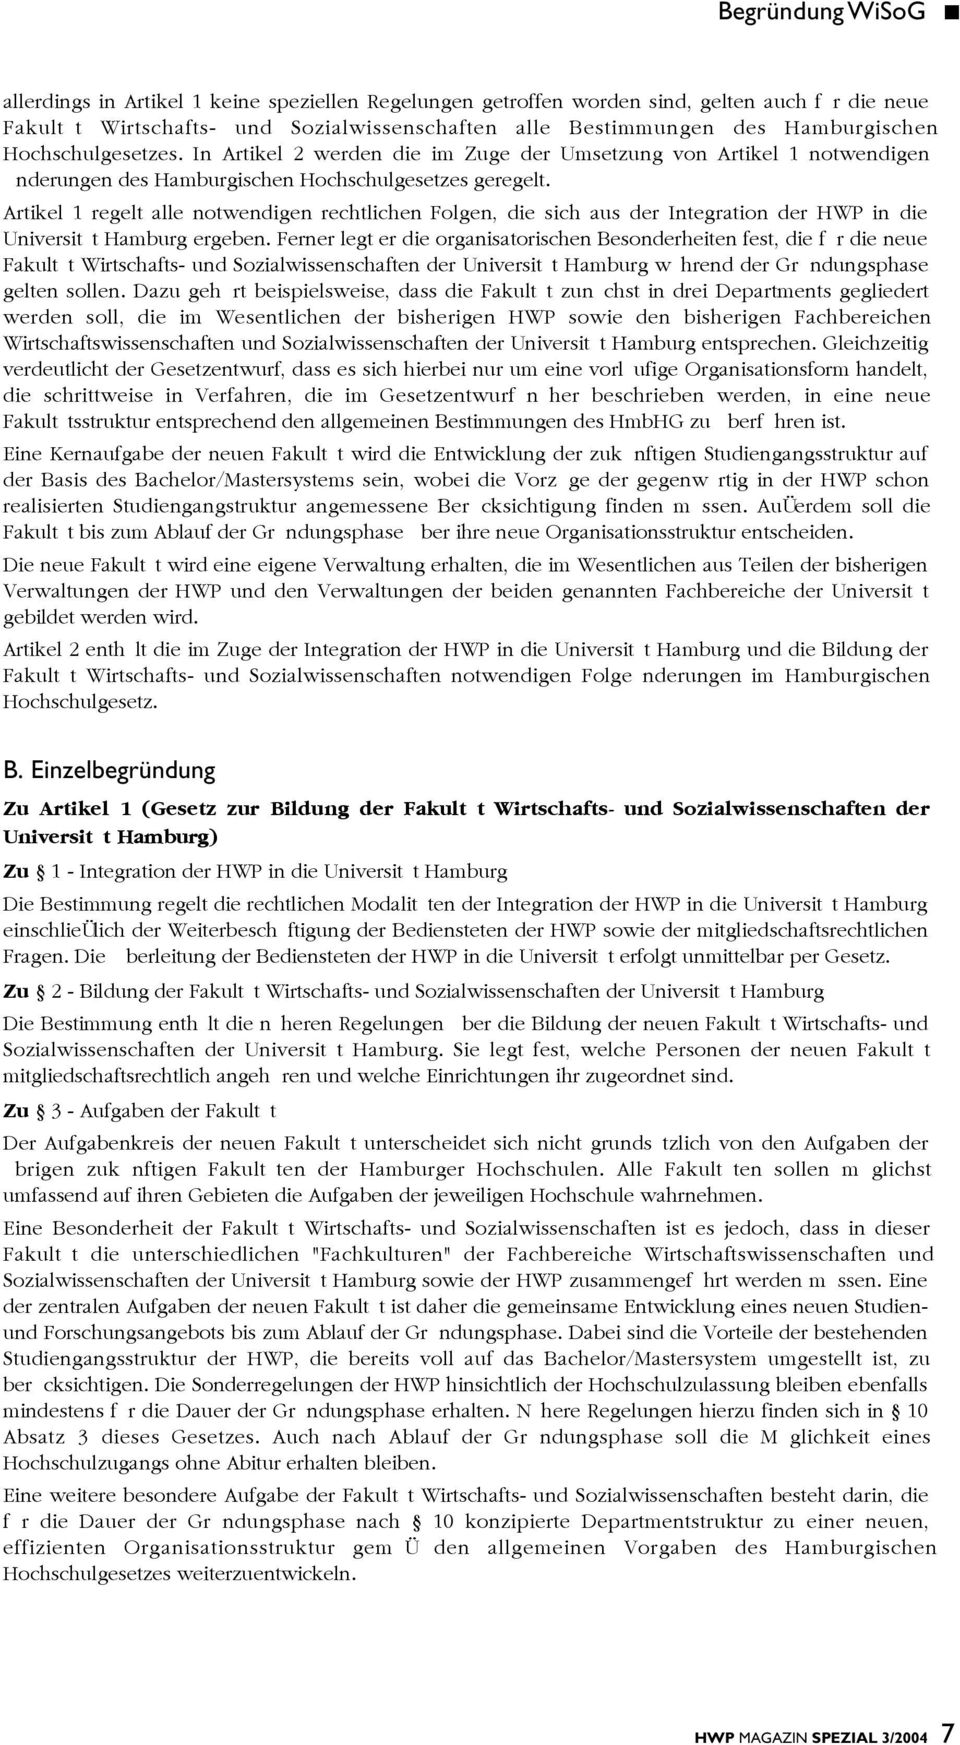 Artikel 1 regelt alle notwendigen rechtlichen Folgen, die sich aus der Integration der HWP in die Universität Hamburg ergeben.